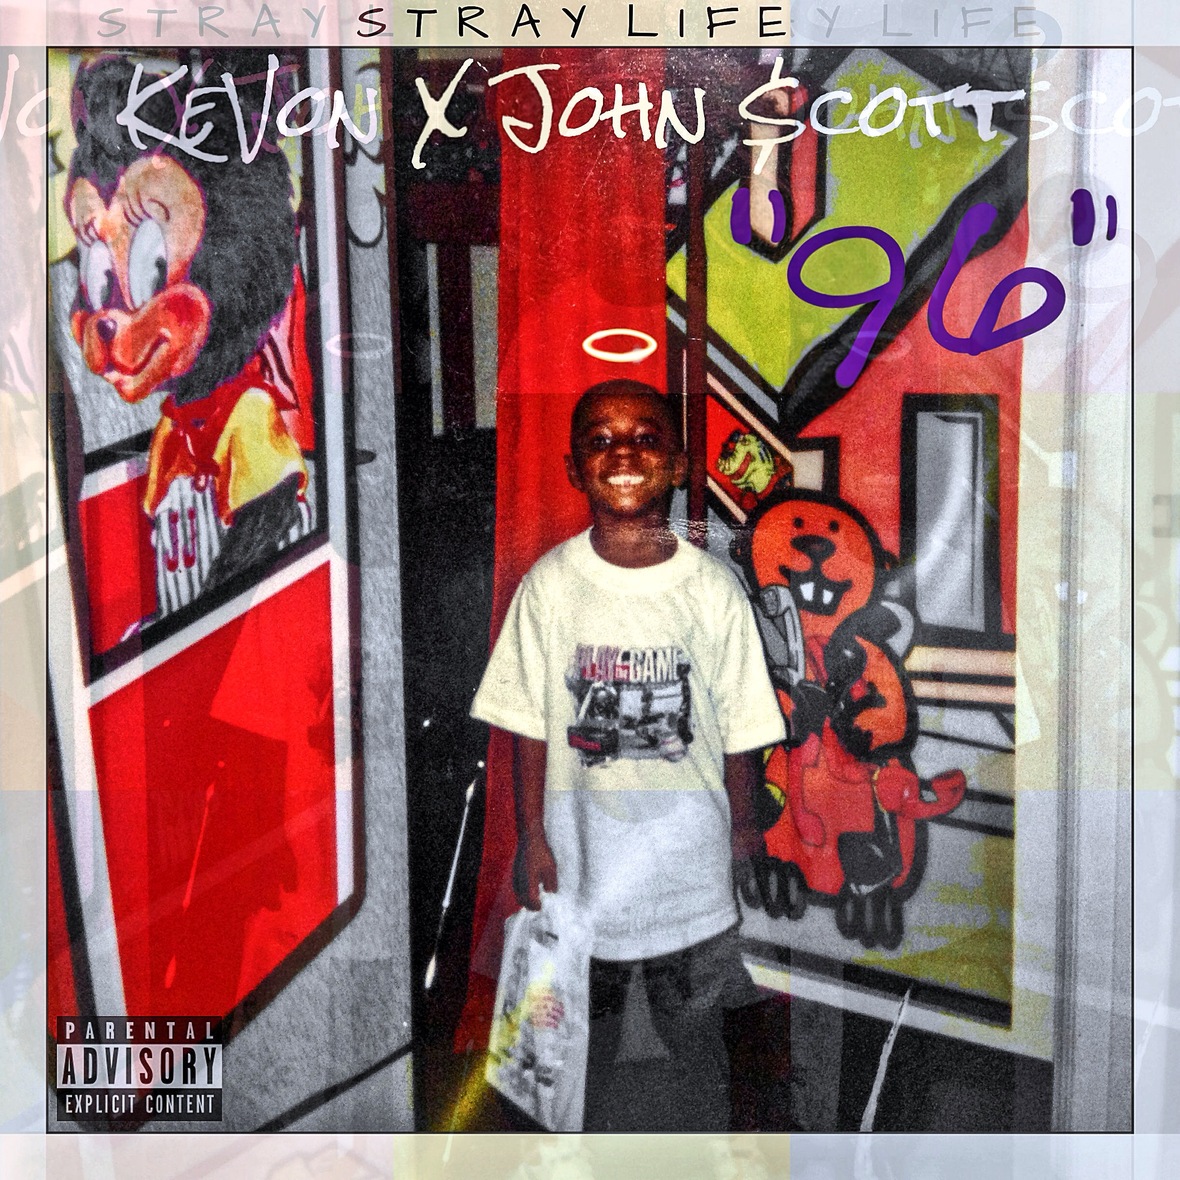 KeVon X John $cott: ’96 (Album)